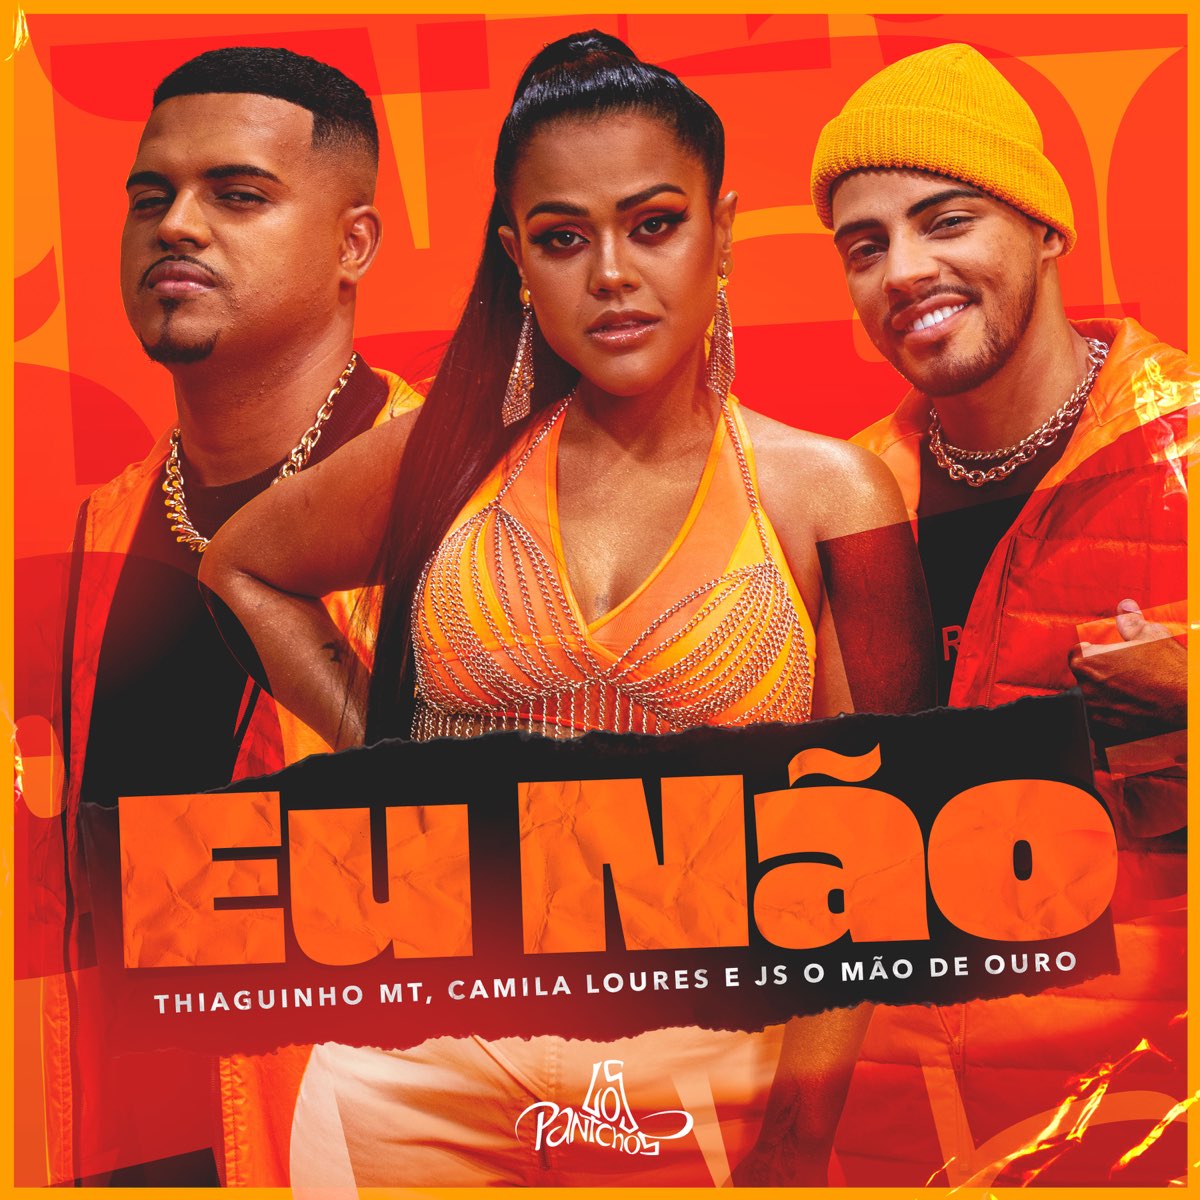 Camila Loures featuring Thiaguinho MT & JS o Mão de Ouro — Eu Não cover artwork